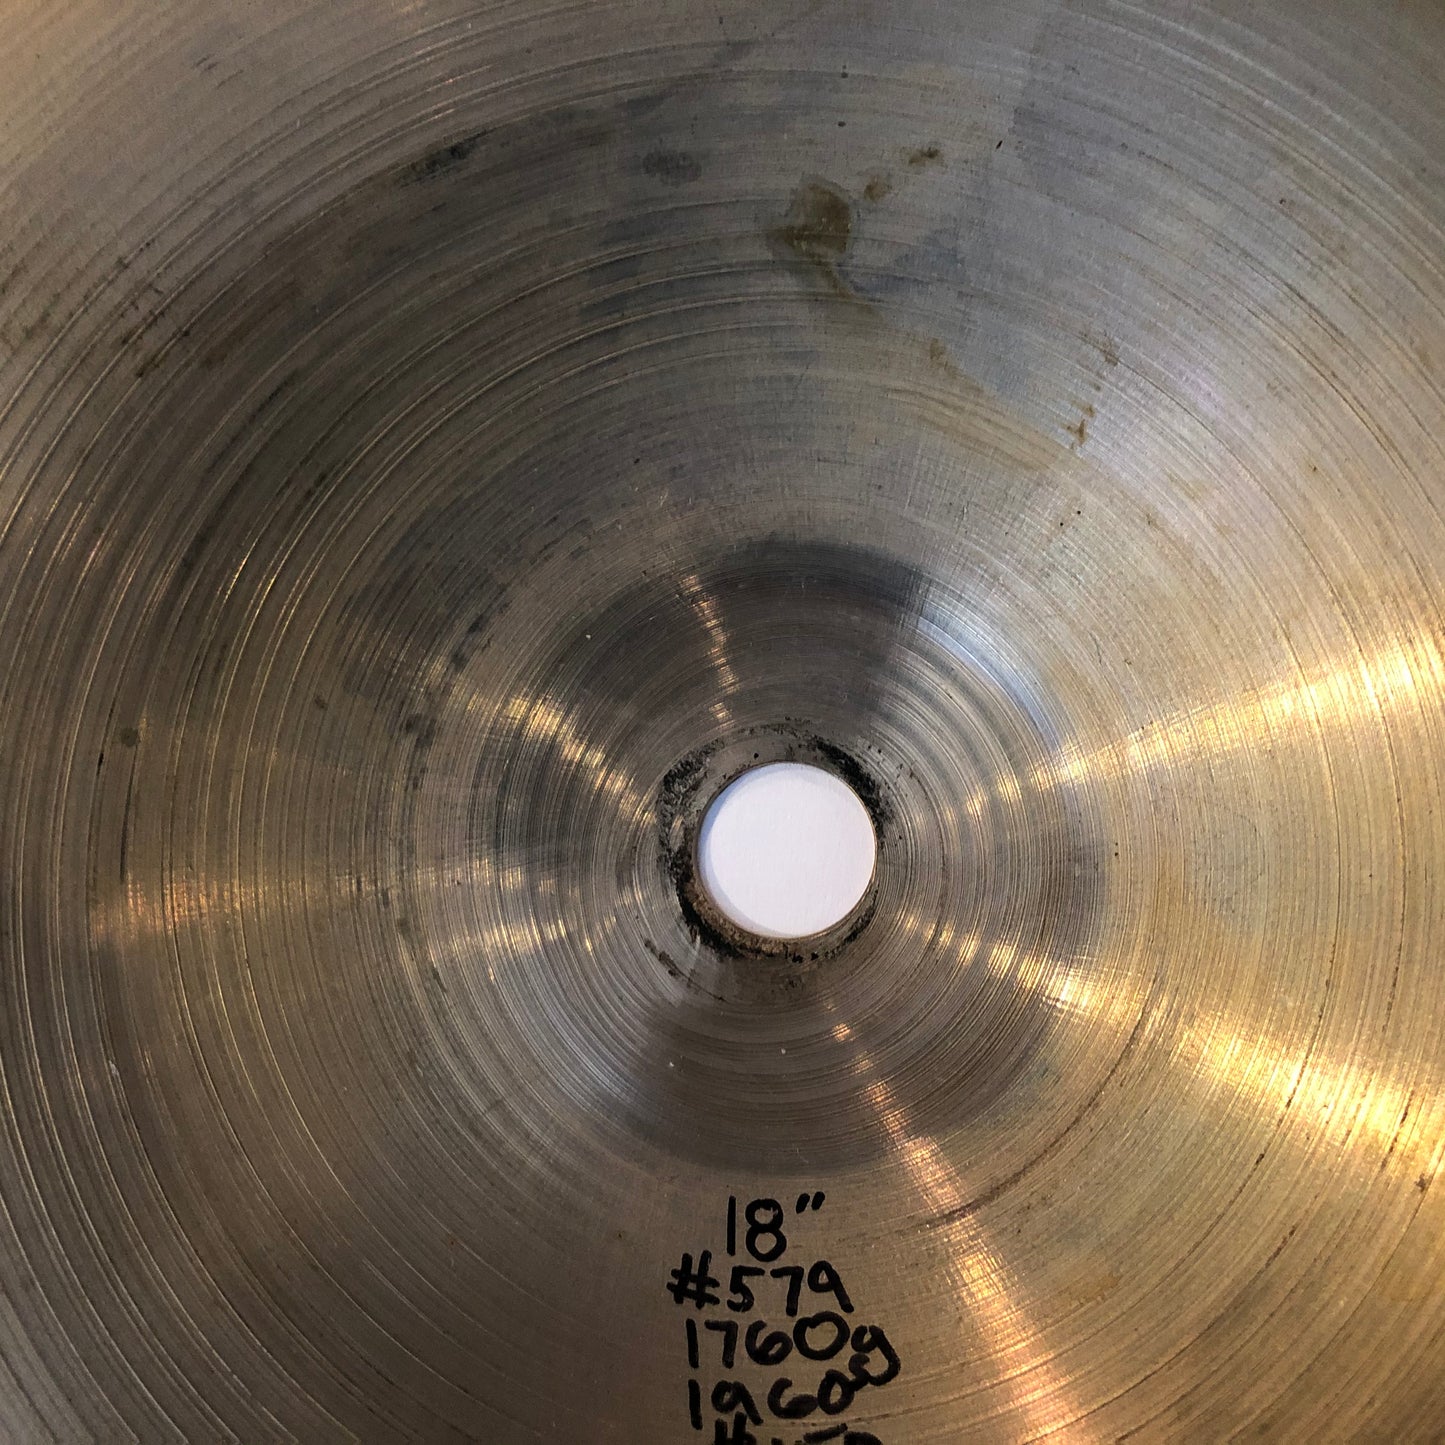 18" Zildjian A 1960s Crash Ride Cymbal 1760g #579